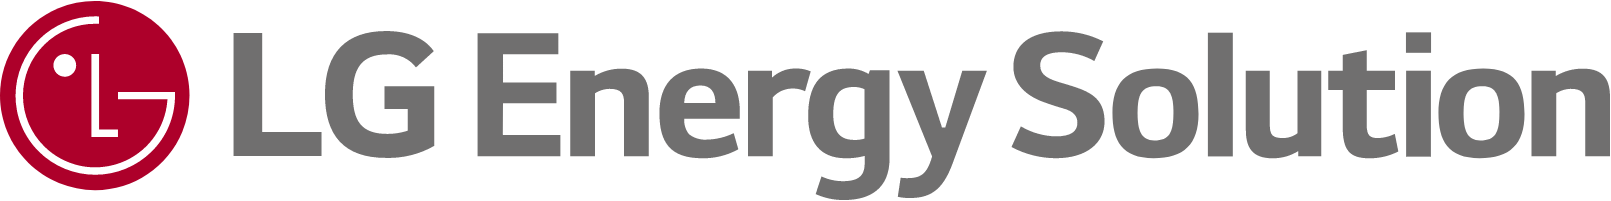 Prekinis ženklas: LG Energy